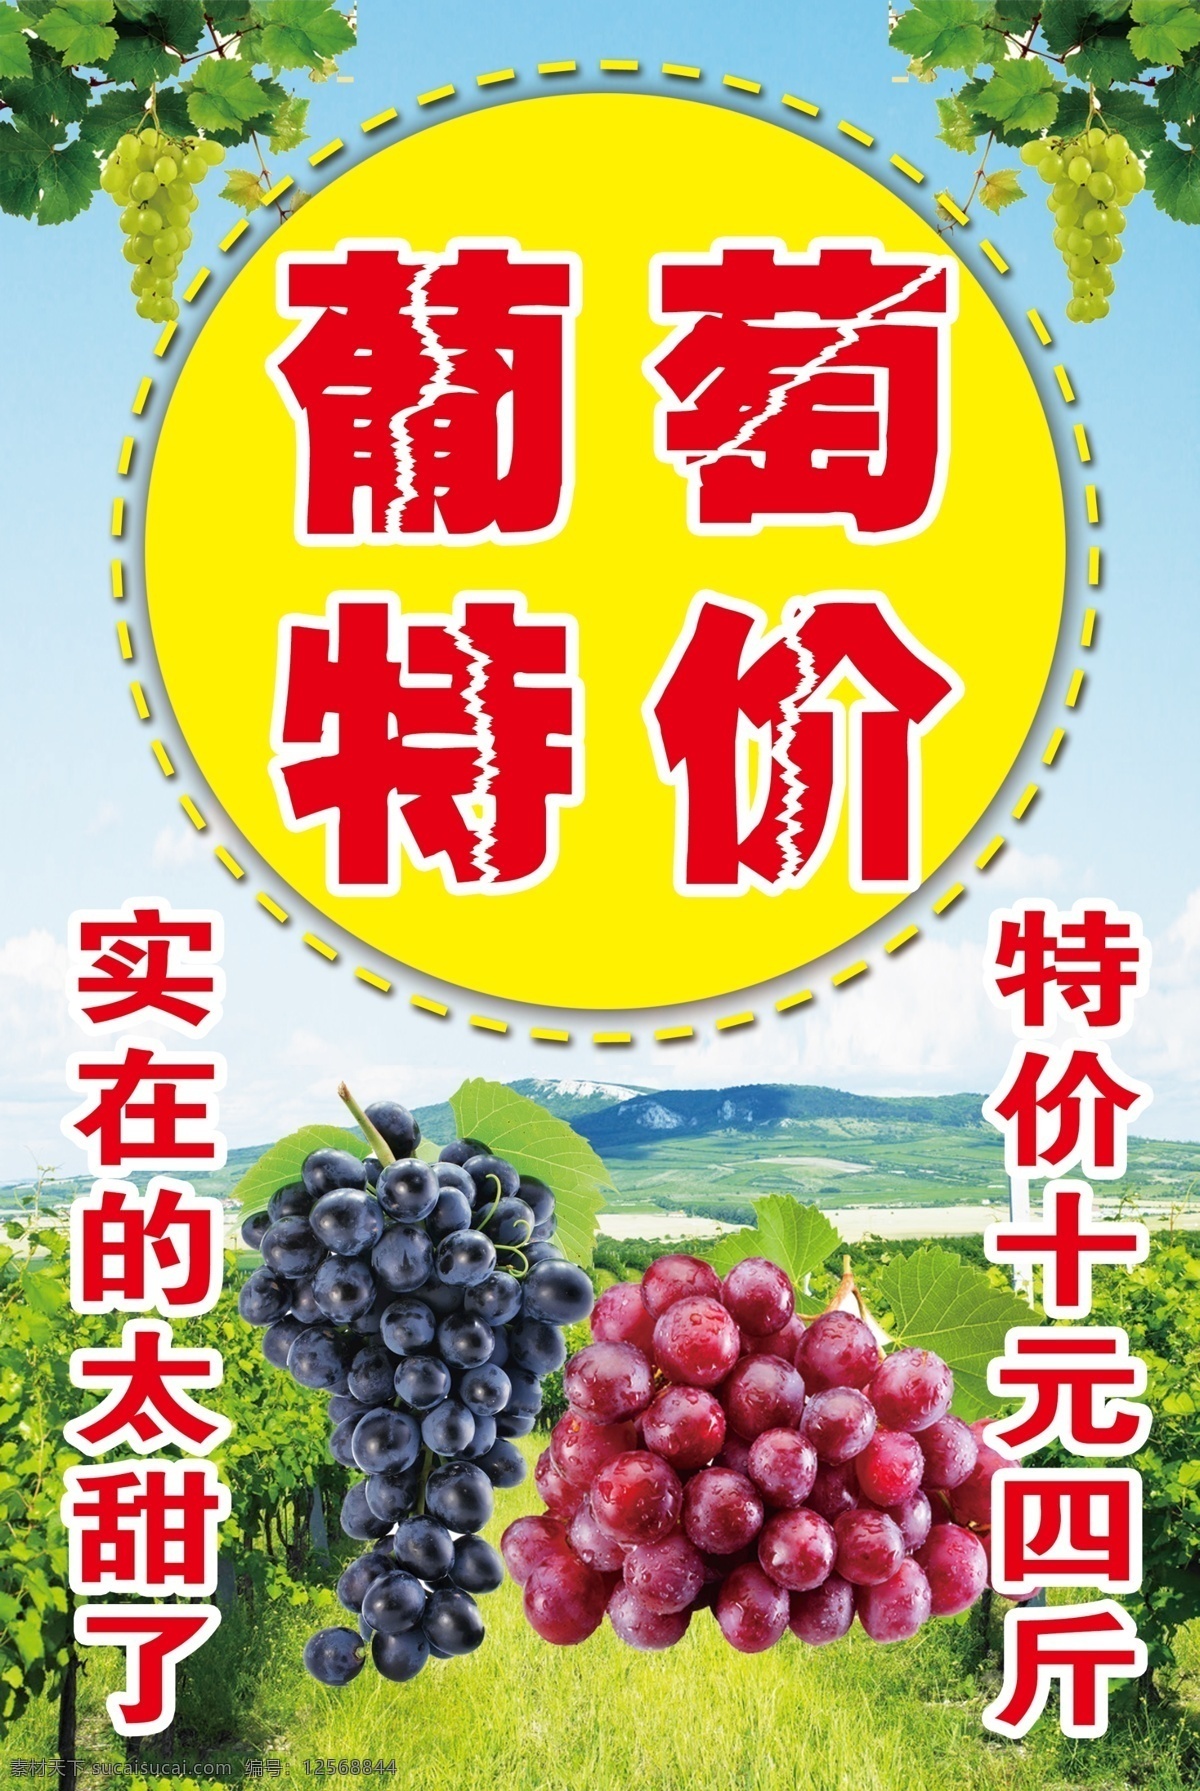 葡萄海报 葡萄特价 葡萄园 葡萄可甜了 葡萄喷绘